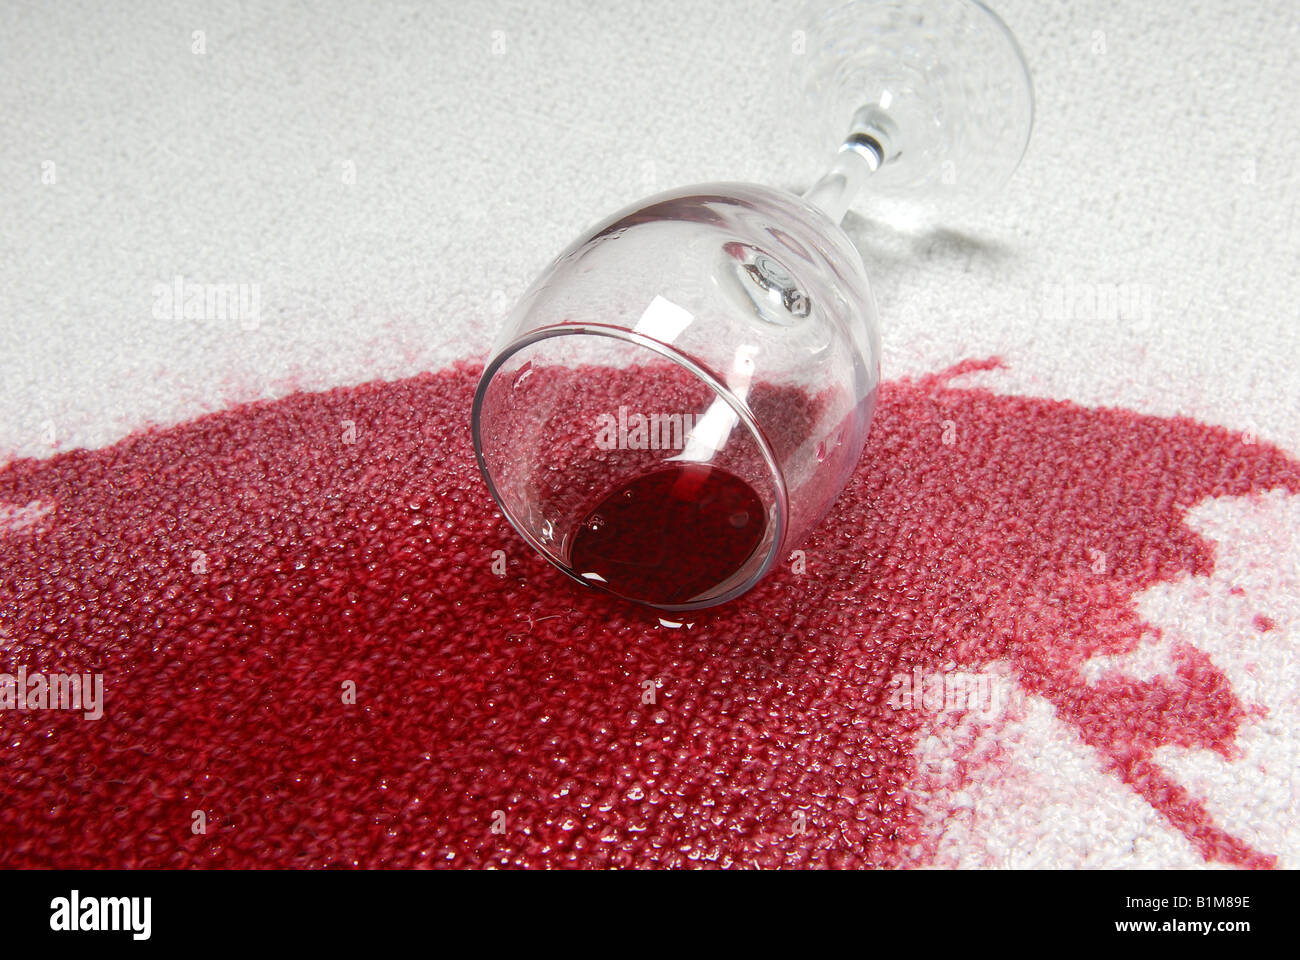 Vin rouge renversé sur le tapis Photo Stock - Alamy